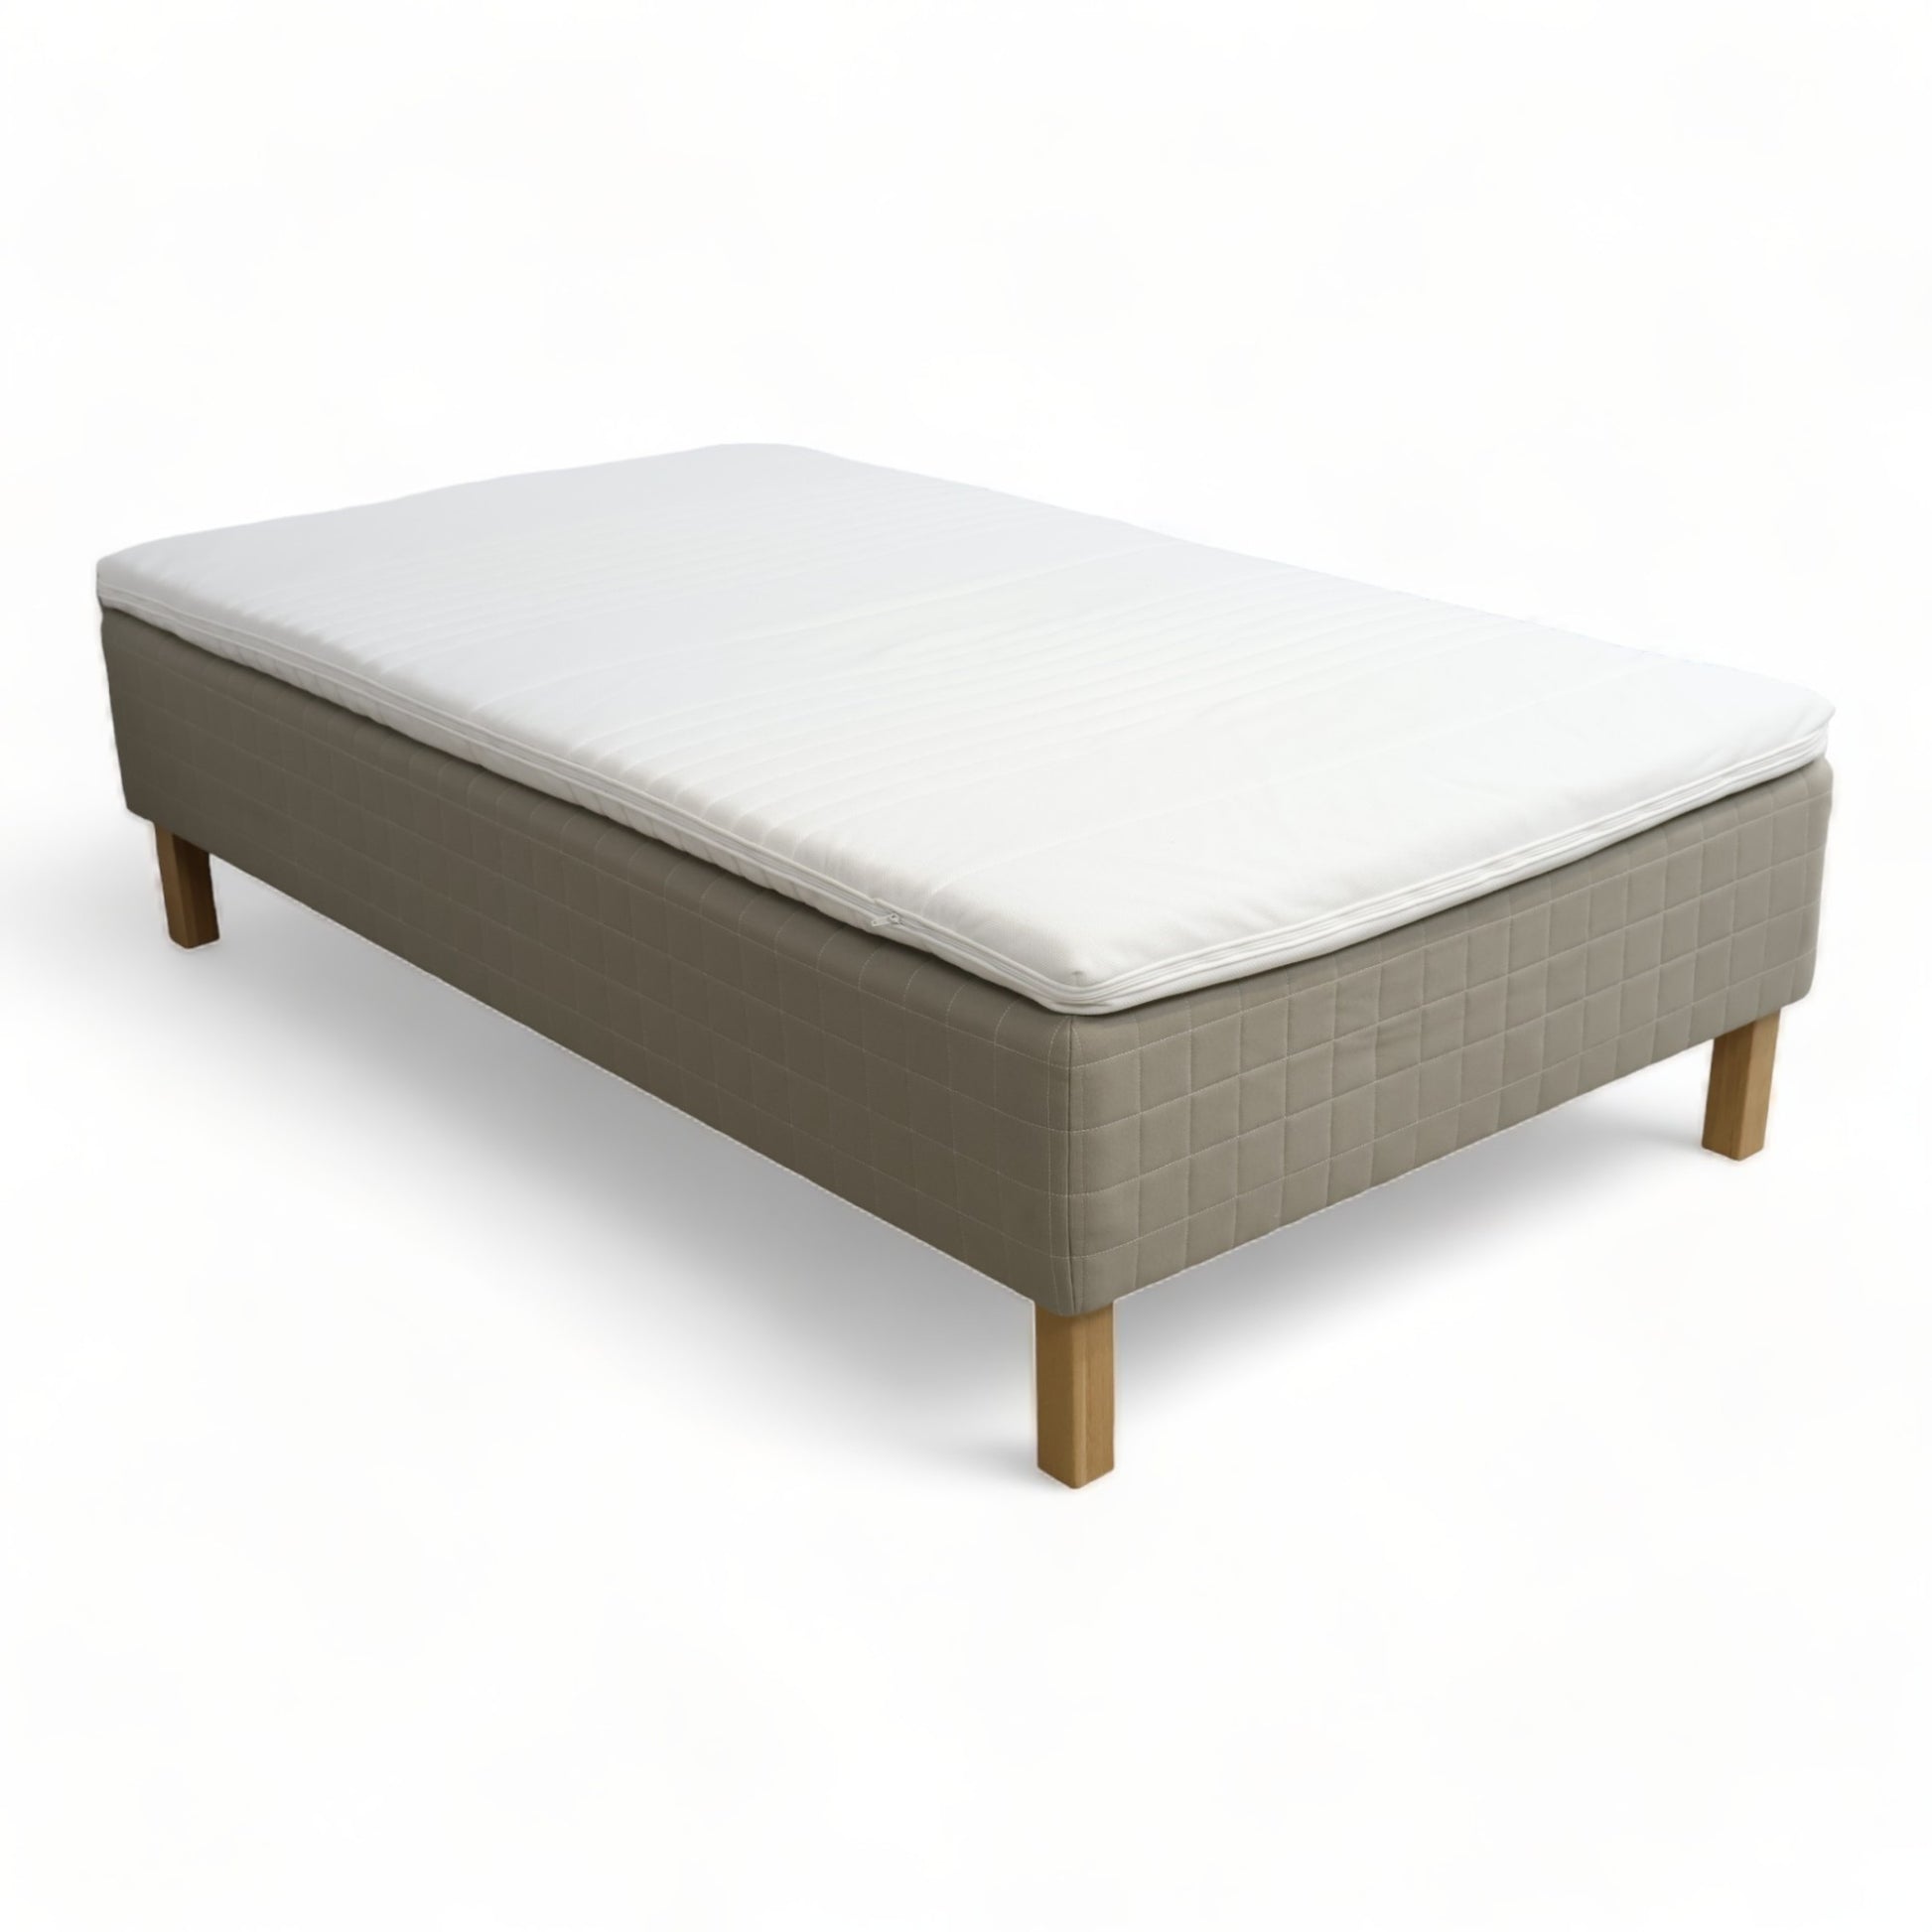 Nyrenset | Beige/grå IKEA Skårer 120x200 seng med Tussøy overmadrass